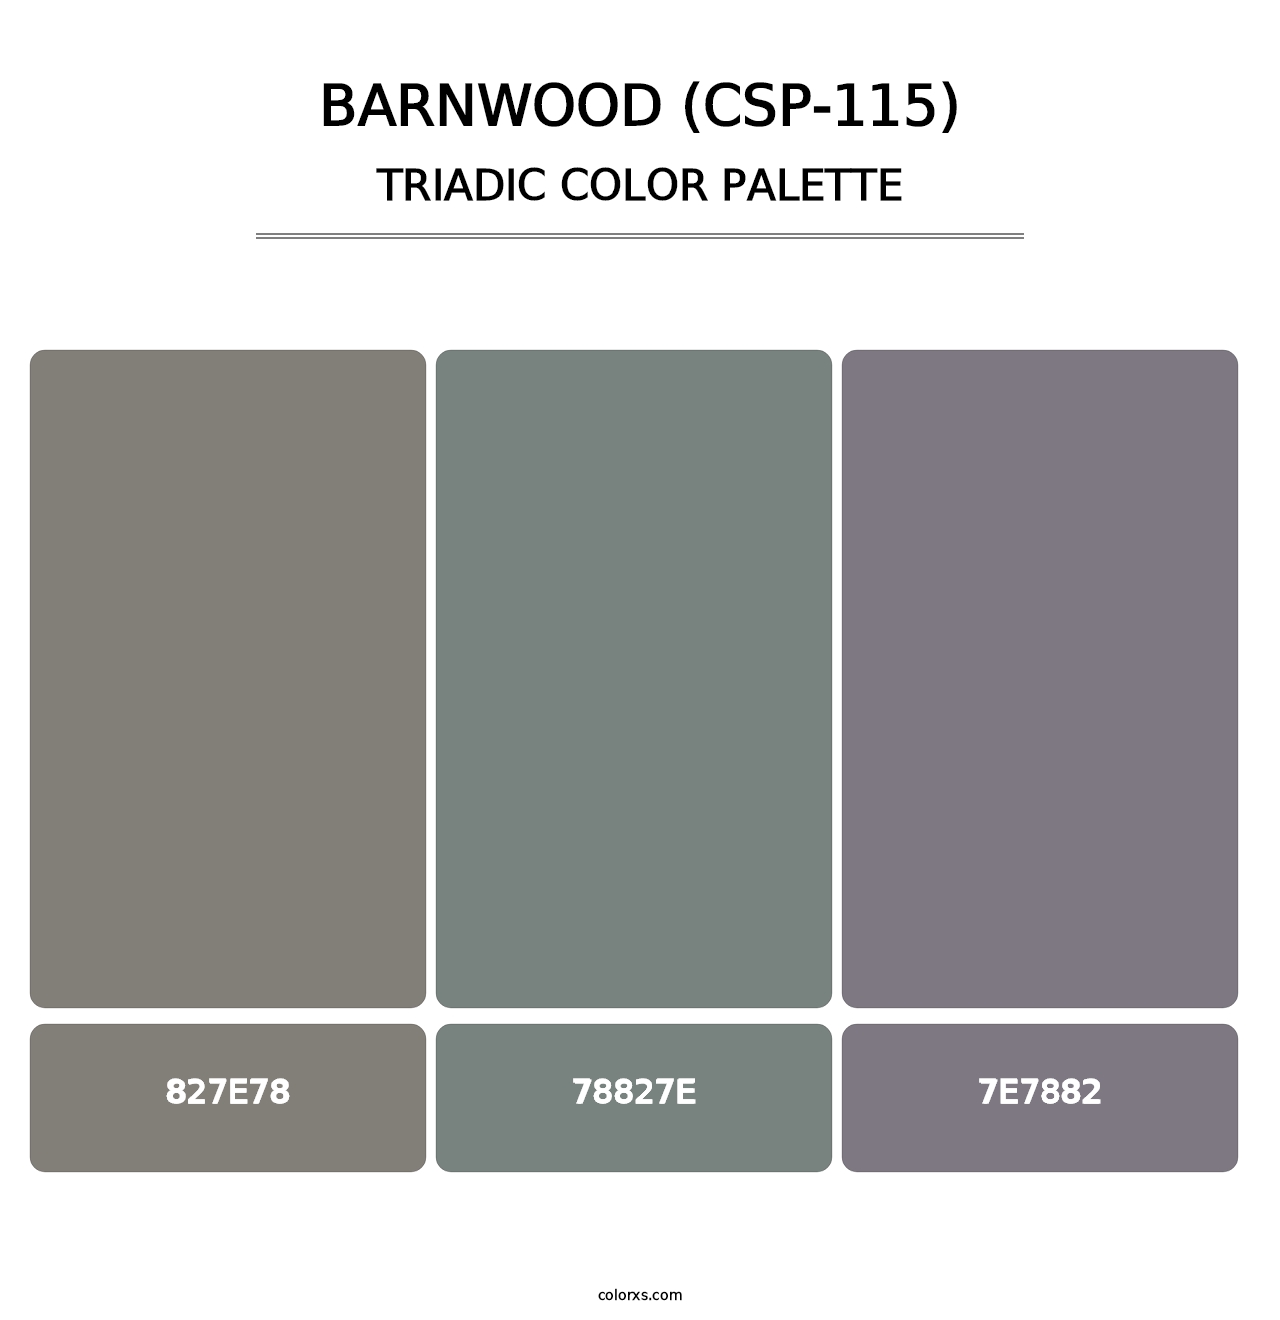 Barnwood (CSP-115) - Triadic Color Palette